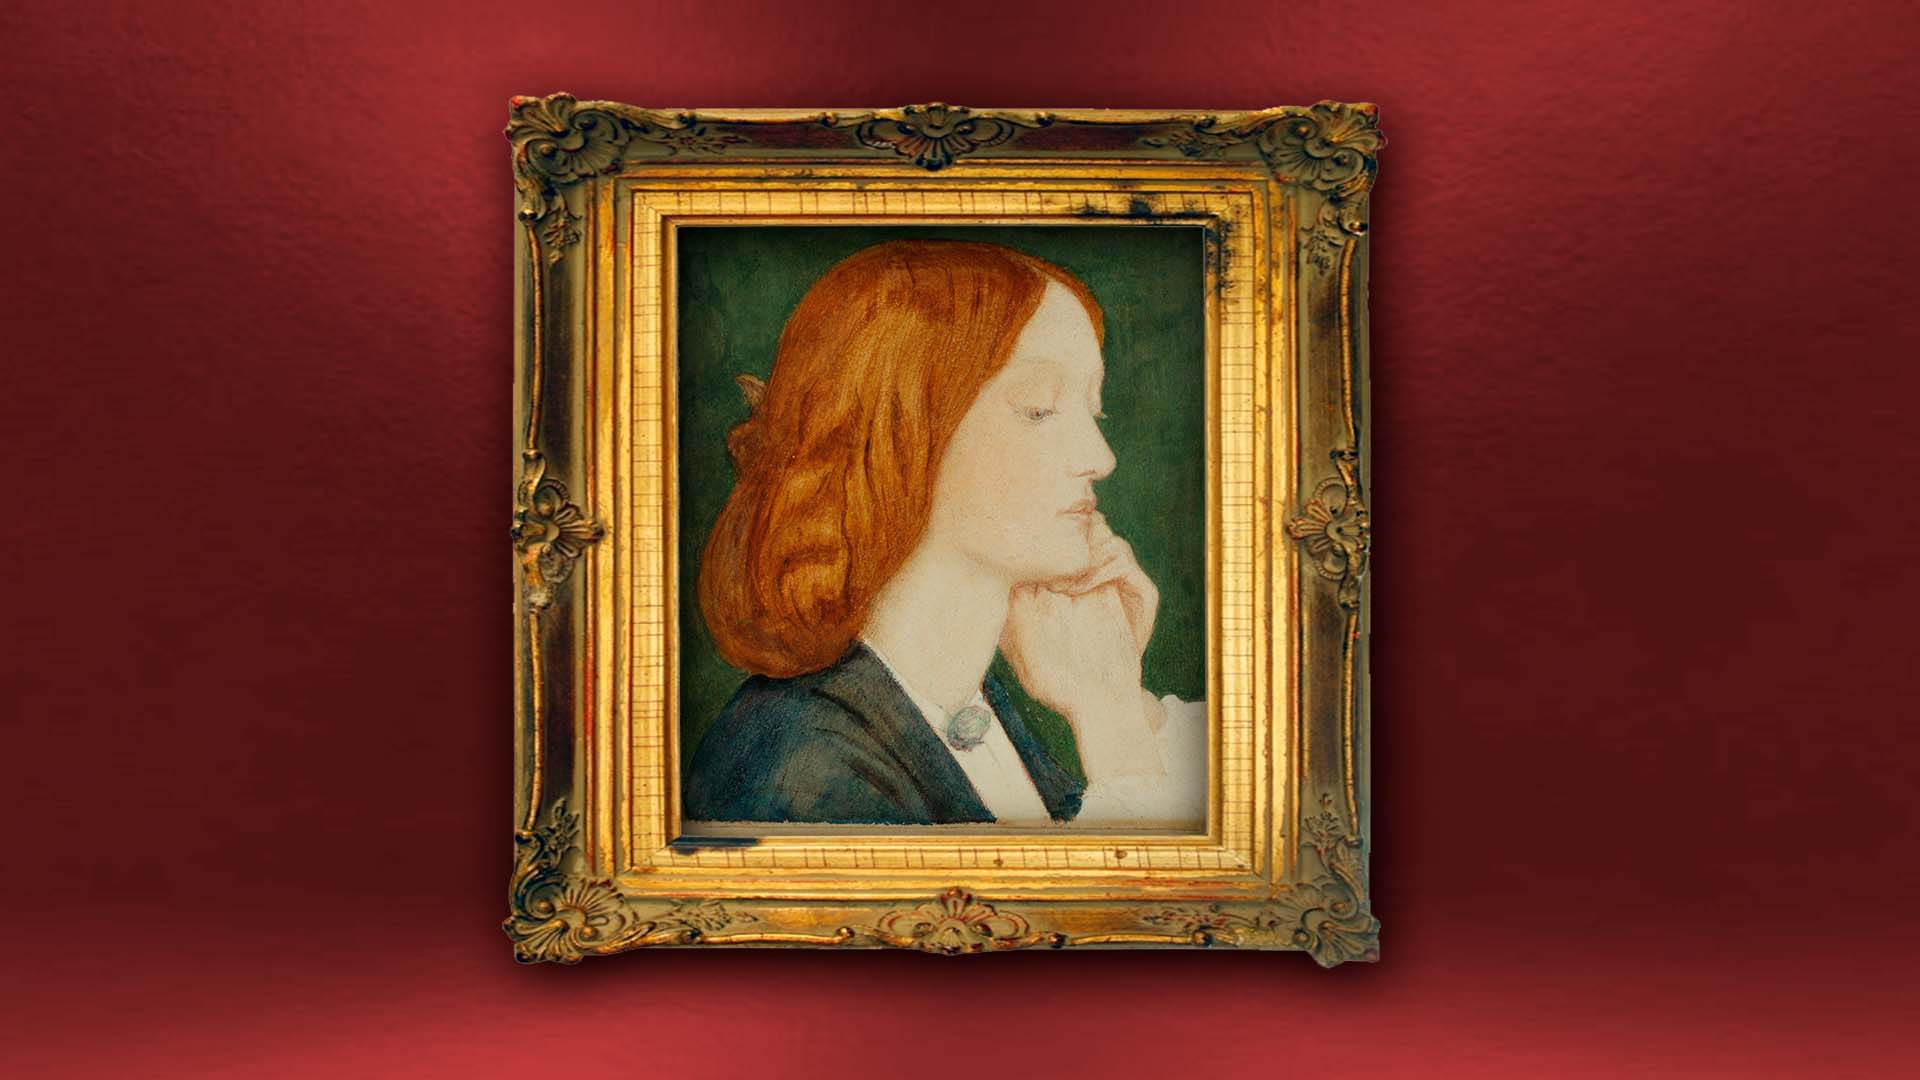 La belleza del día: “Retrato de Elizabeth Siddal”, de Dante Gabriel Rossetti